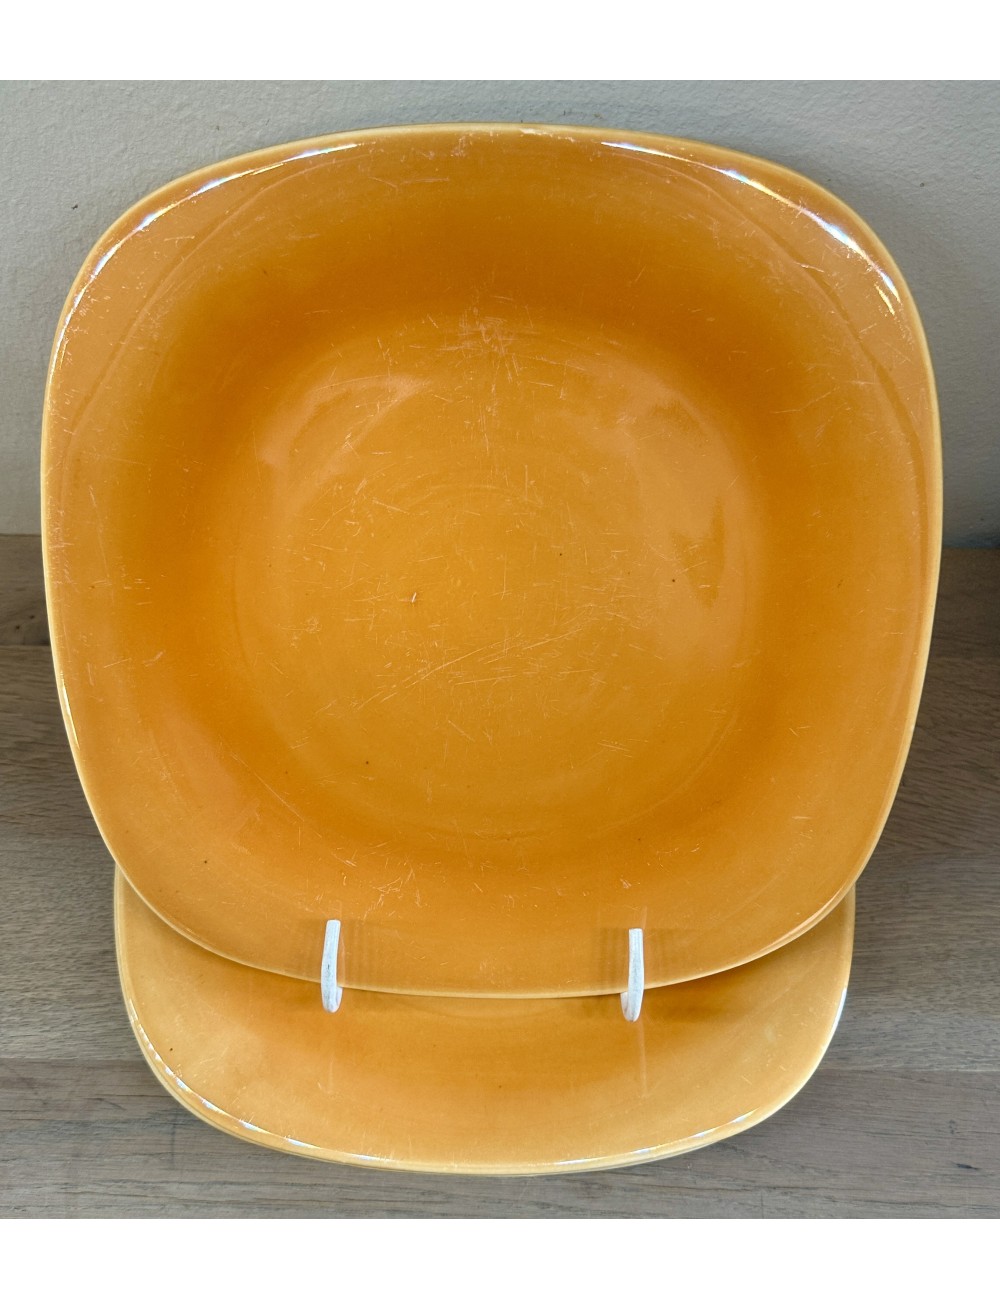 Dinerbord / Eetbord - Boch - model SATURNE in vierkante vormgeving en uitgevoerd in oranje